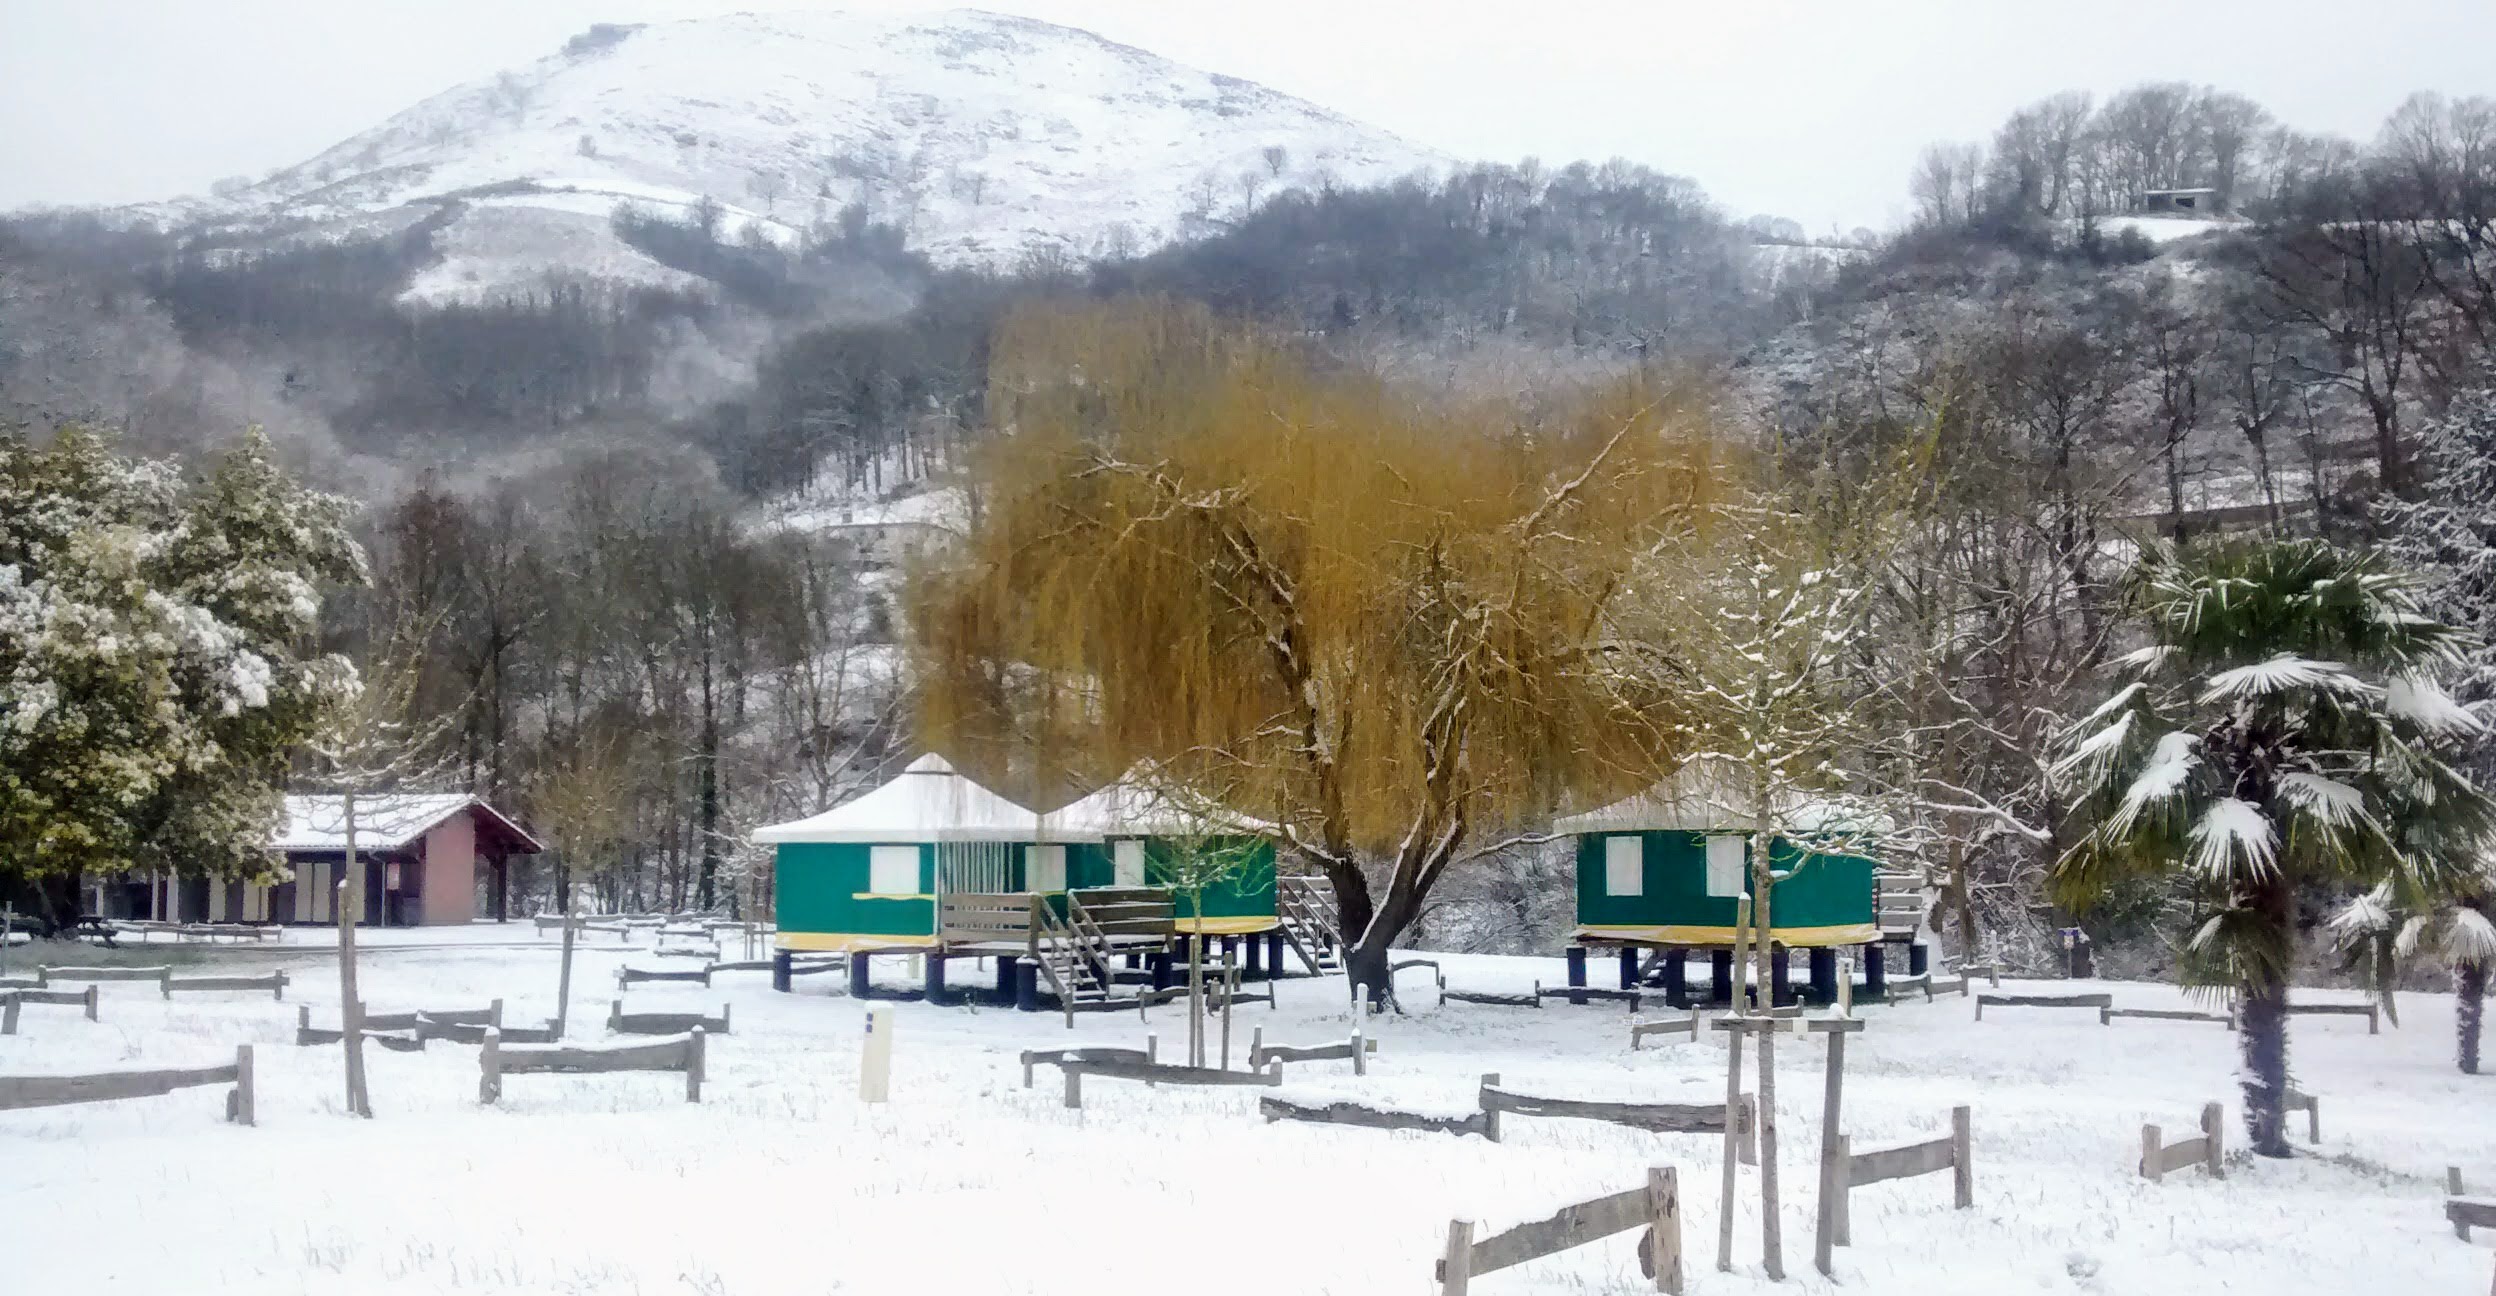 Campsite Amestoya de Bidarray under the snow